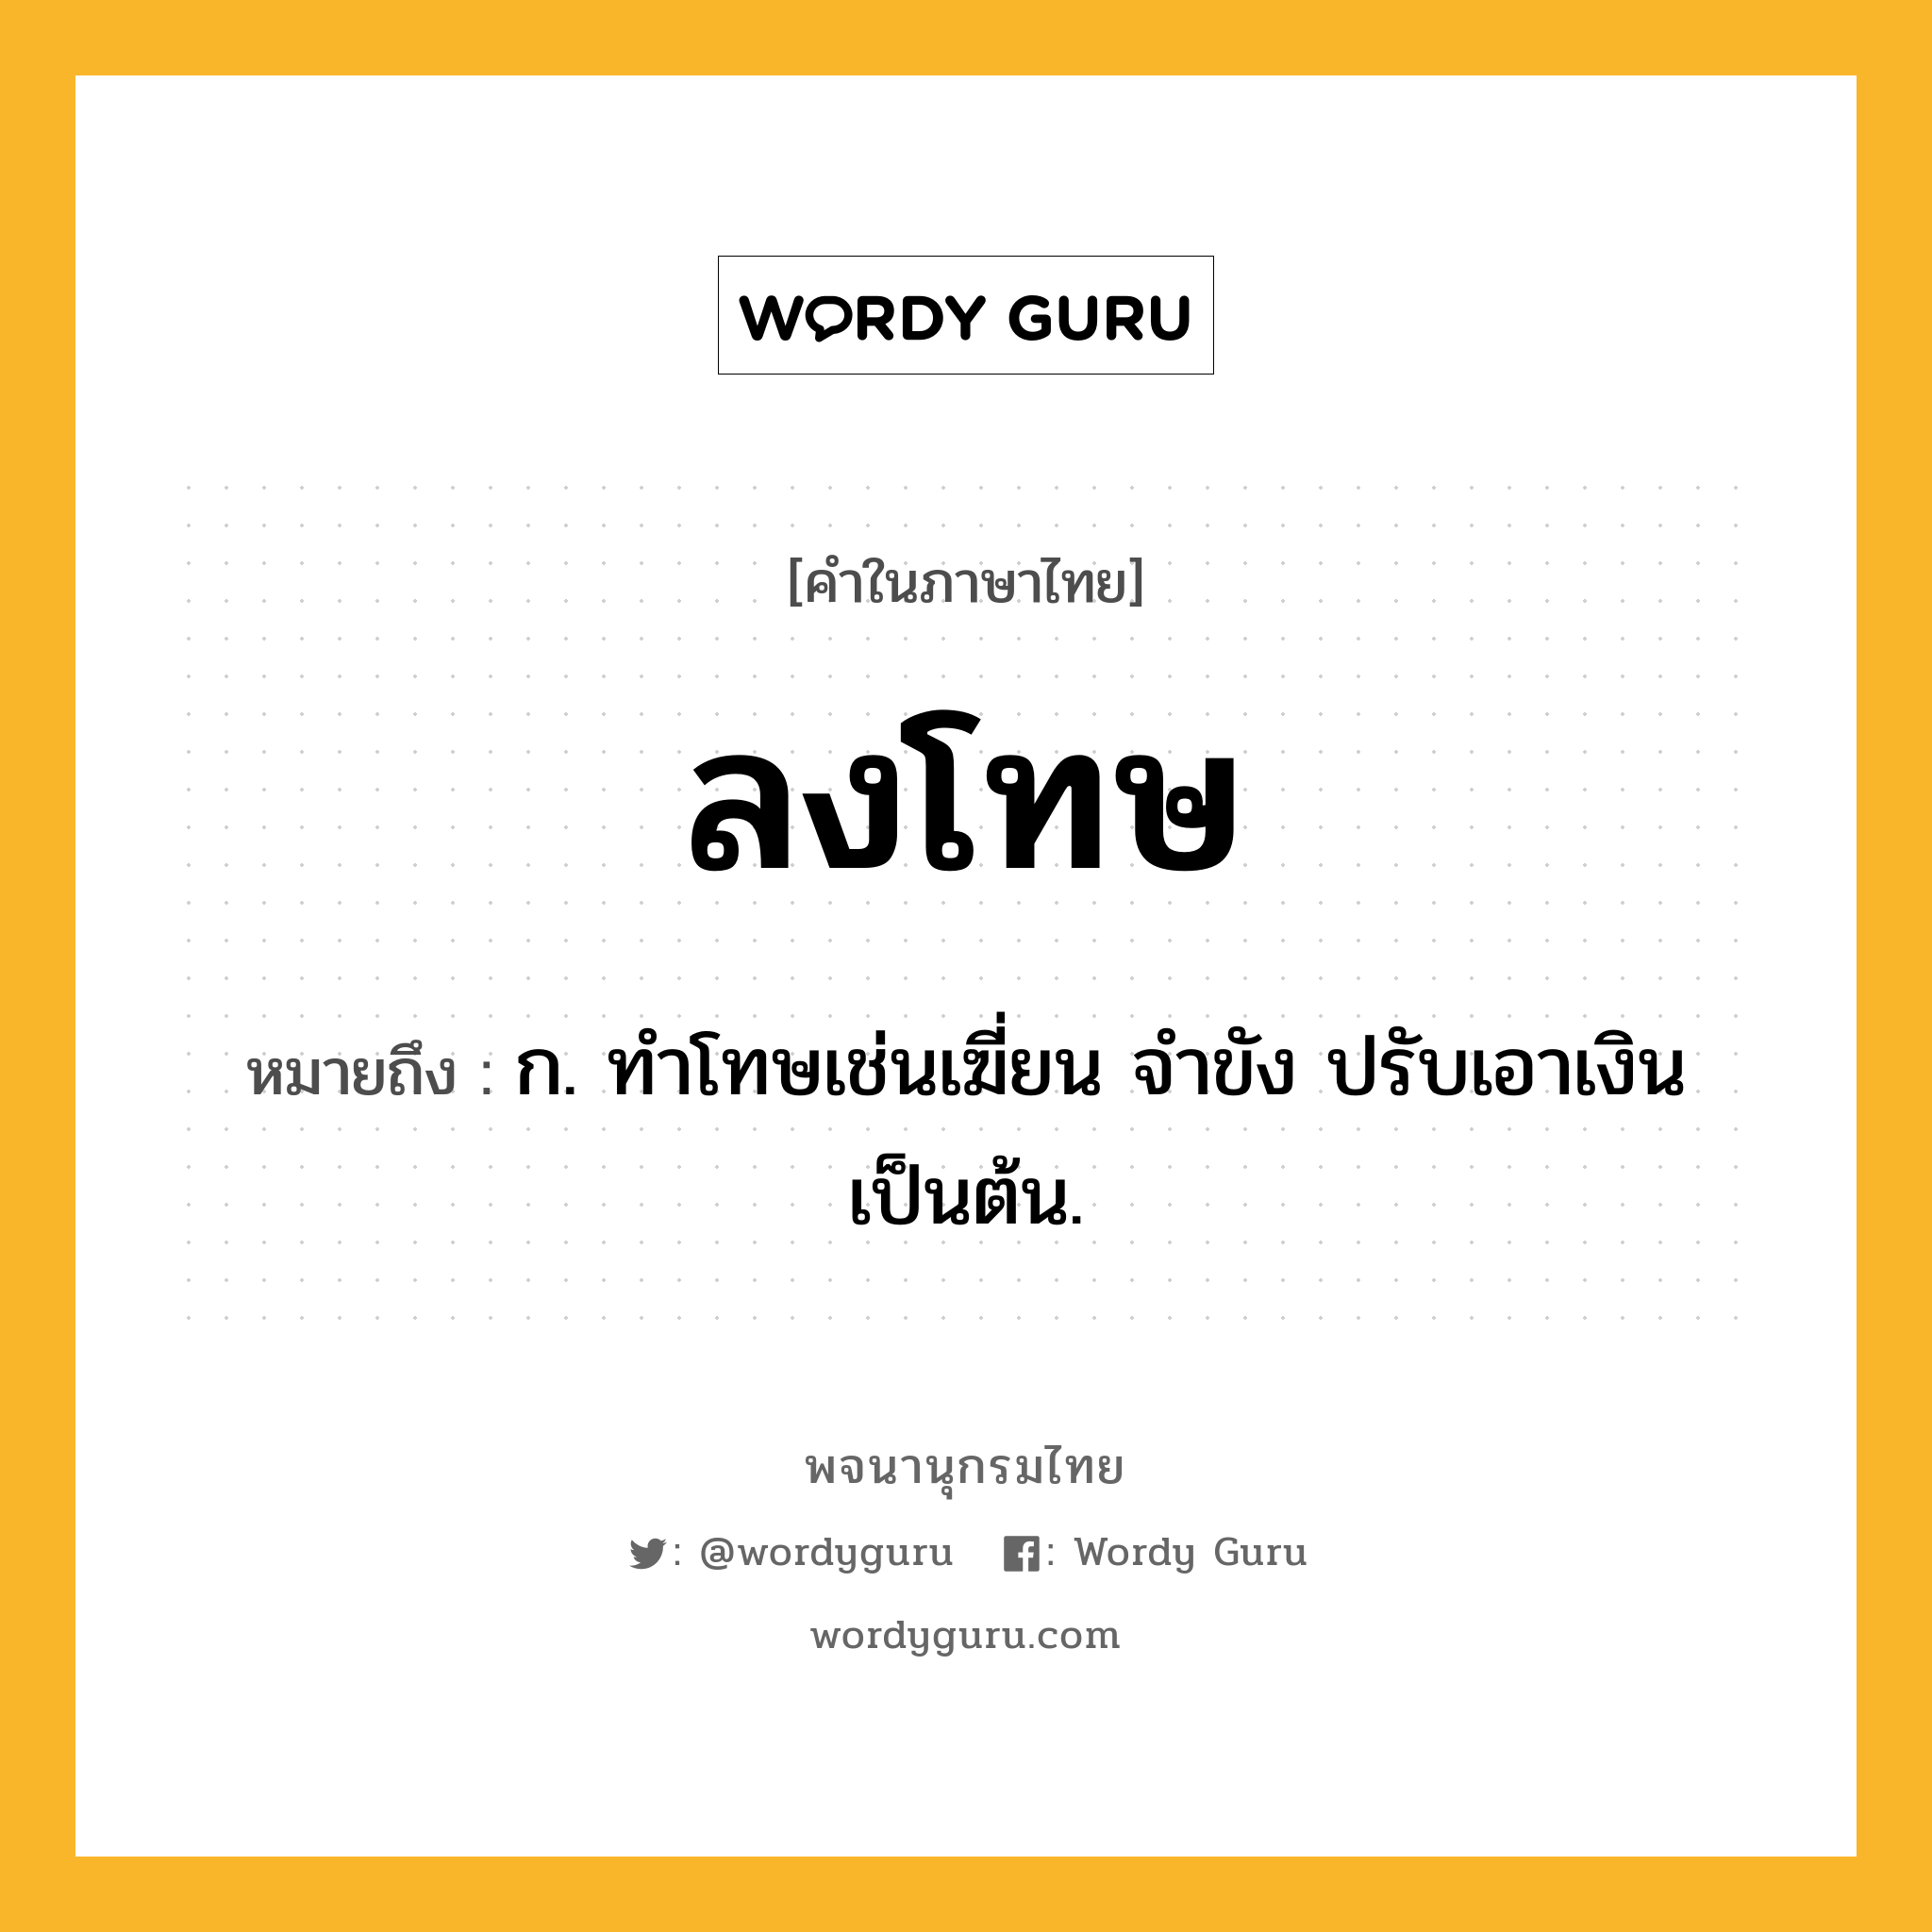 ลงโทษ หมายถึงอะไร?, คำในภาษาไทย ลงโทษ หมายถึง ก. ทําโทษเช่นเฆี่ยน จําขัง ปรับเอาเงิน เป็นต้น.